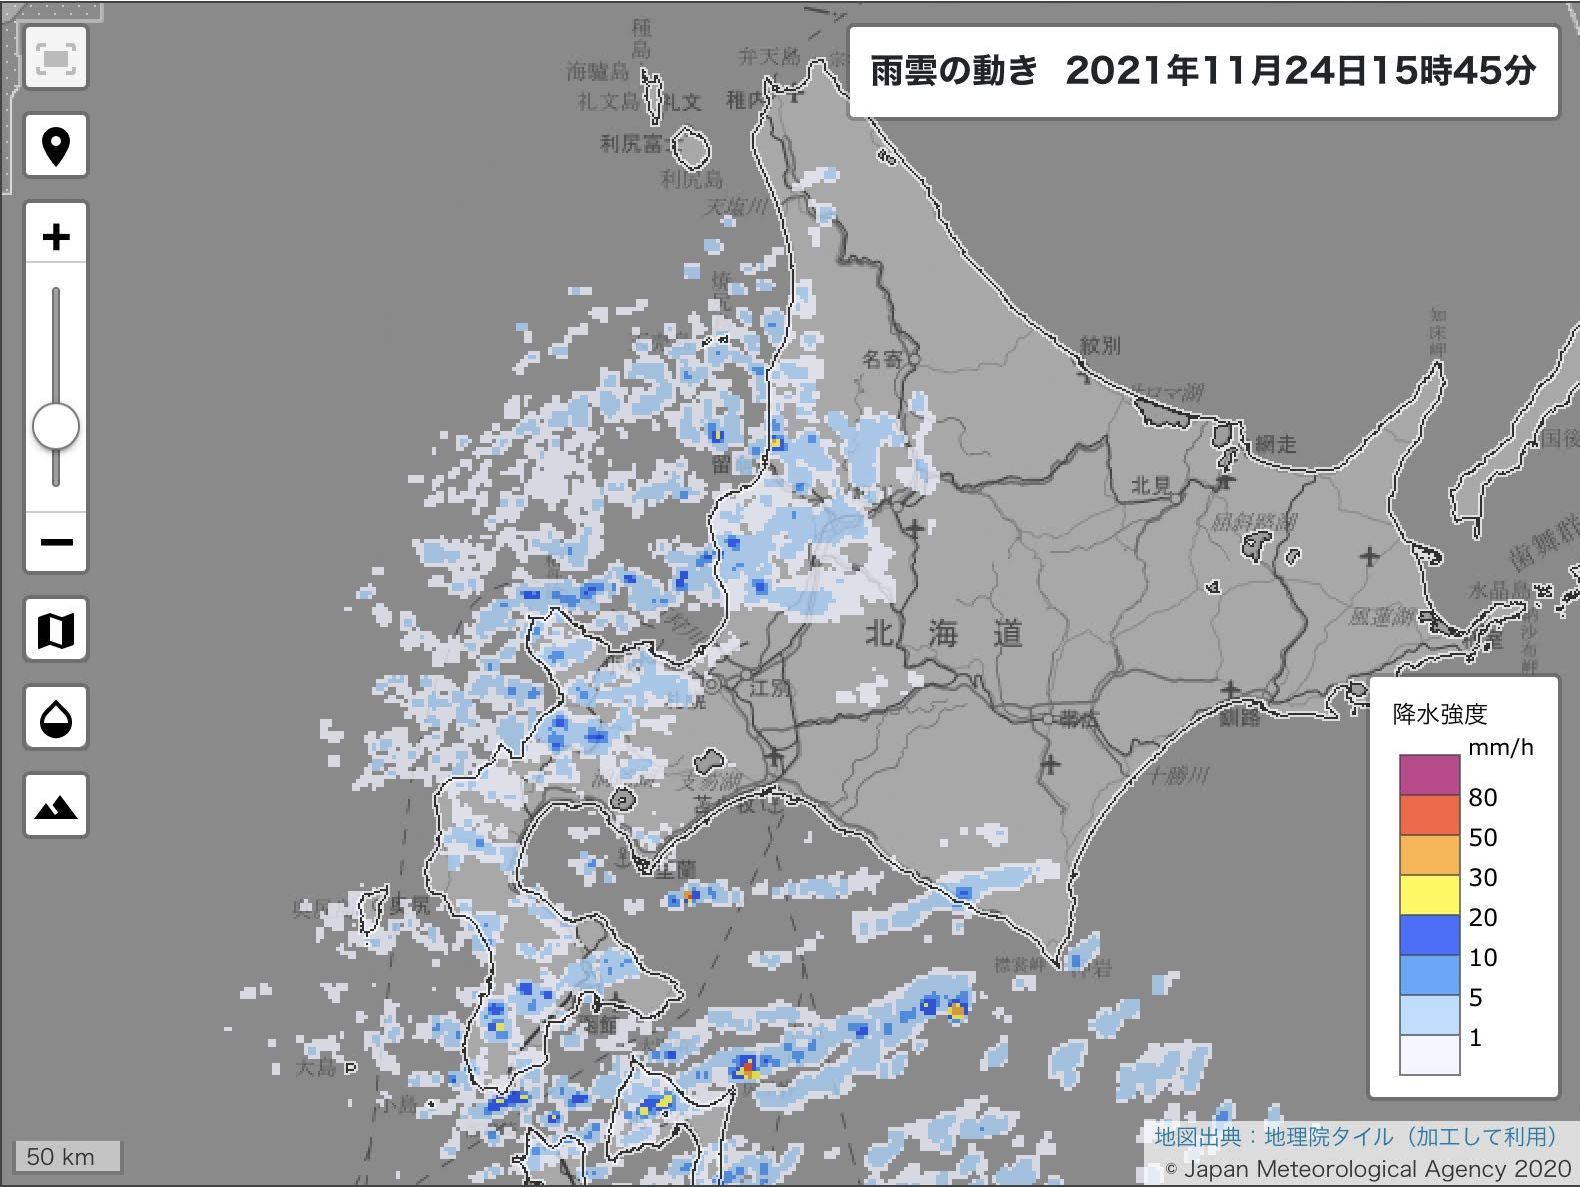 1日中冷蔵庫内の温度でも雪の降らない札幌_c0025115_21562385.jpg